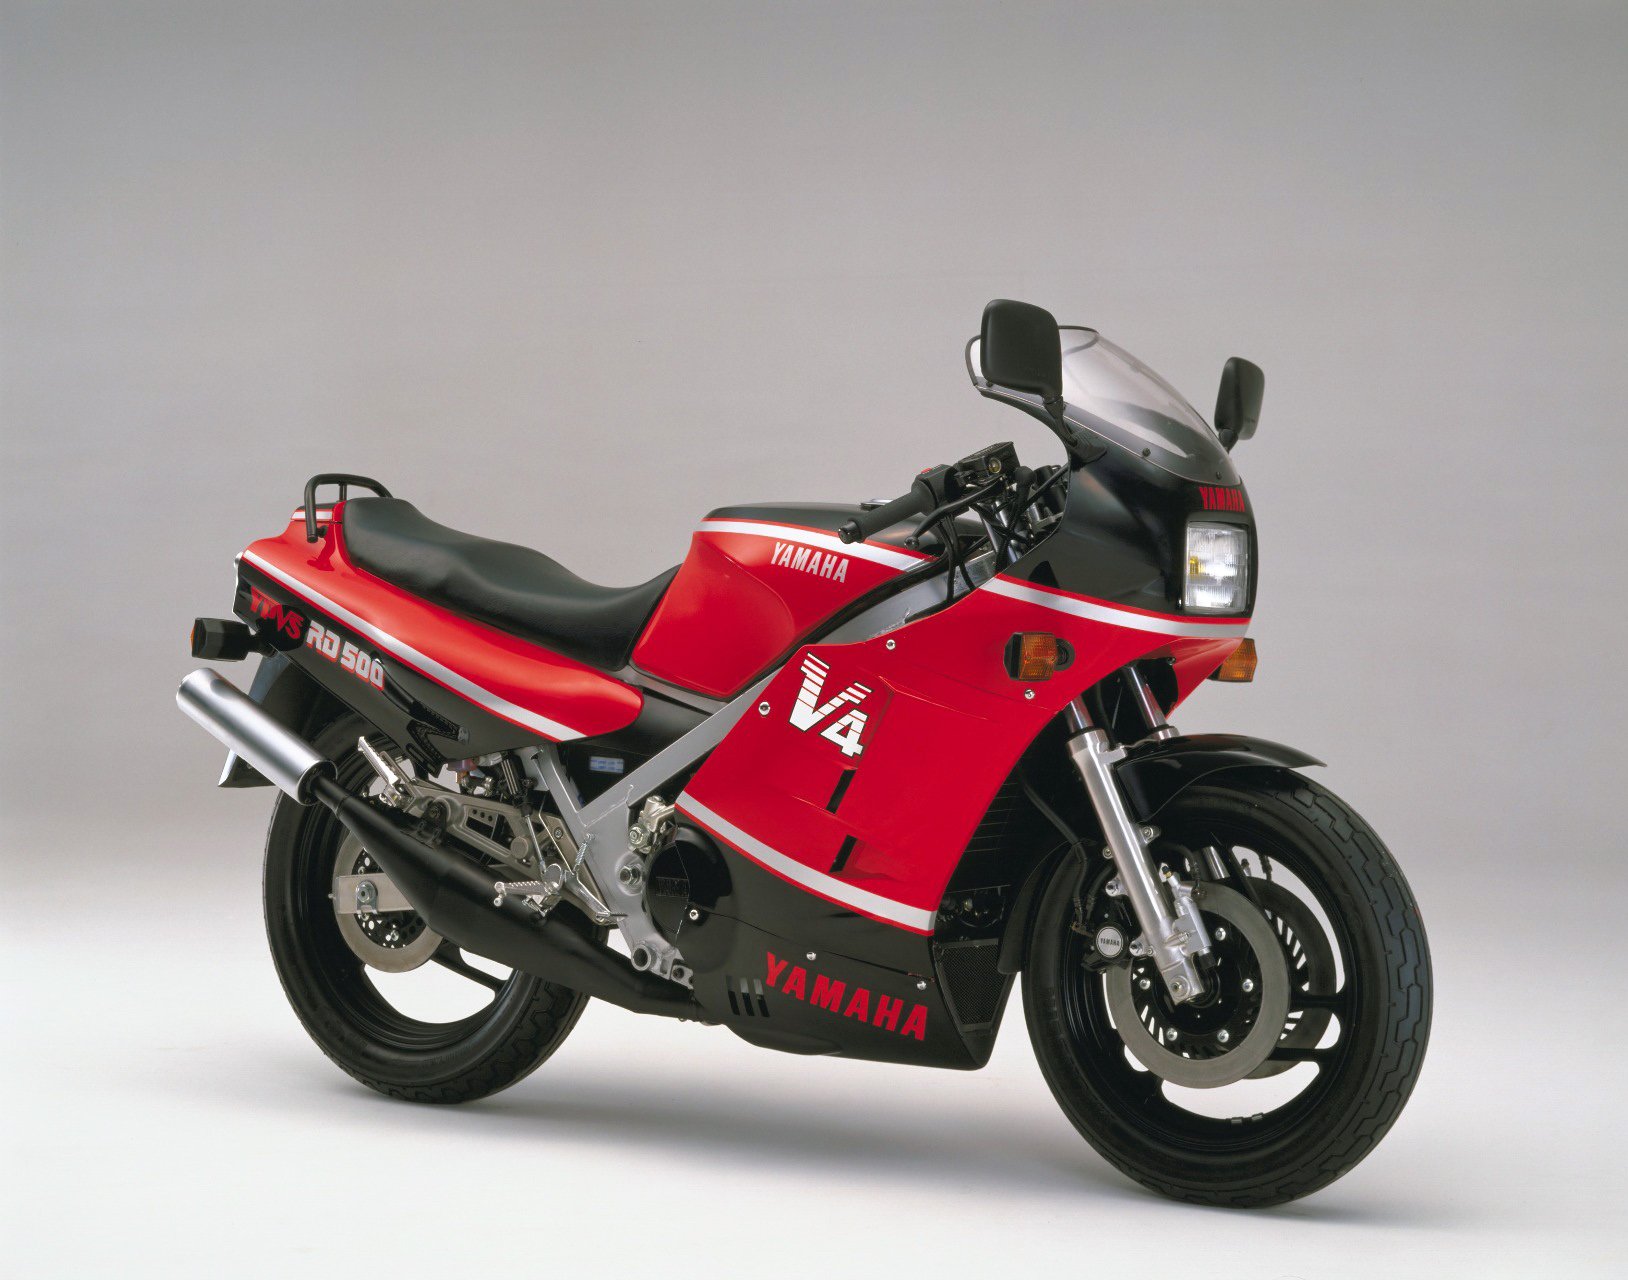 yamaha, Rd500lc, Motorcycles, 1985 Wallpaper